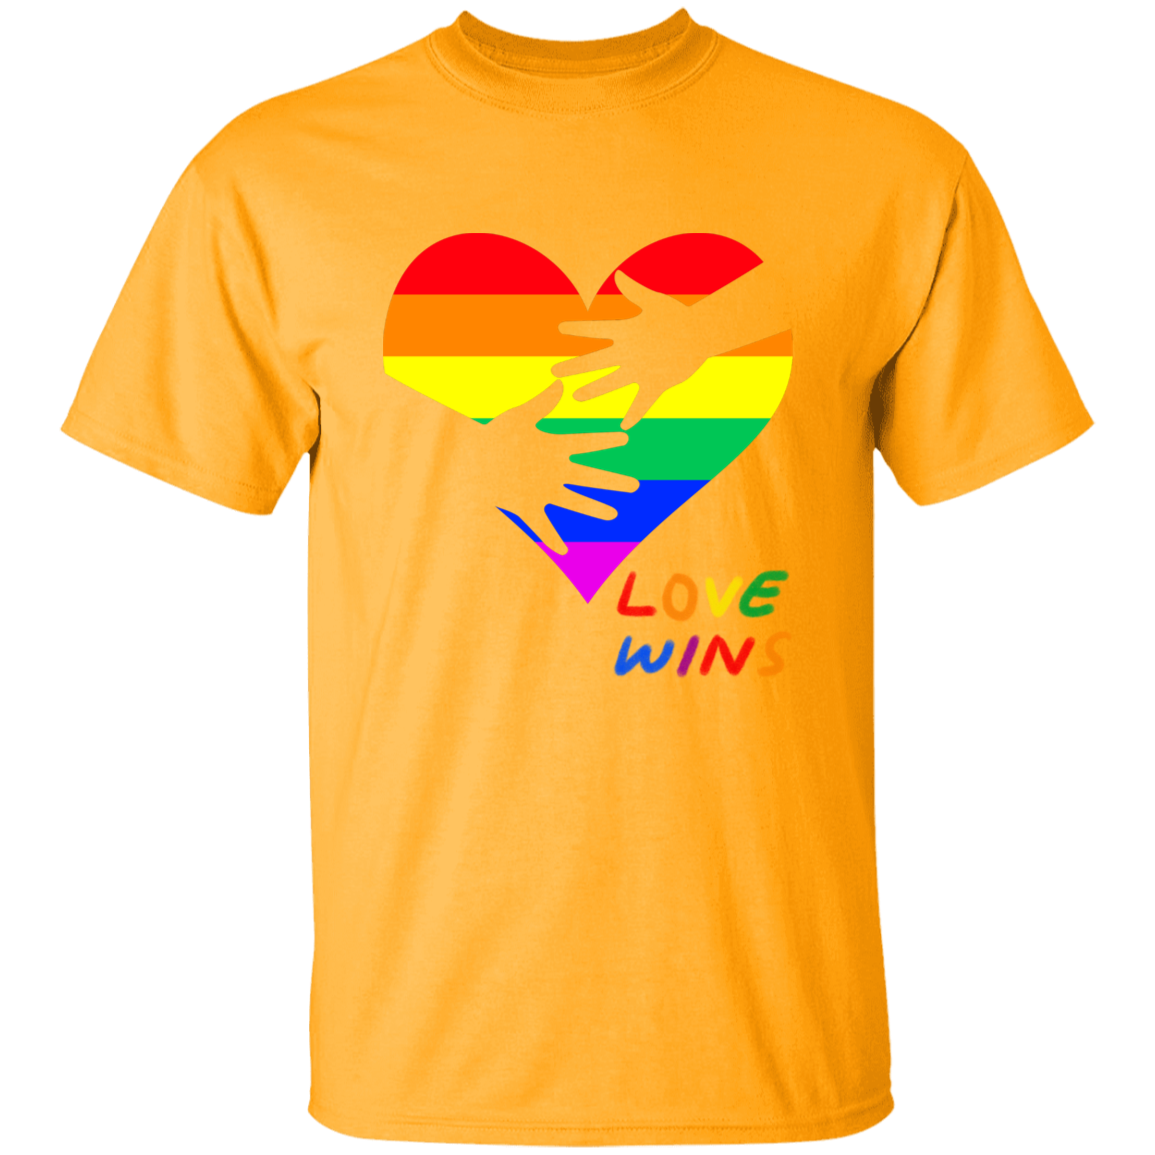 Love Wins Heart Short Sleeve Shirt